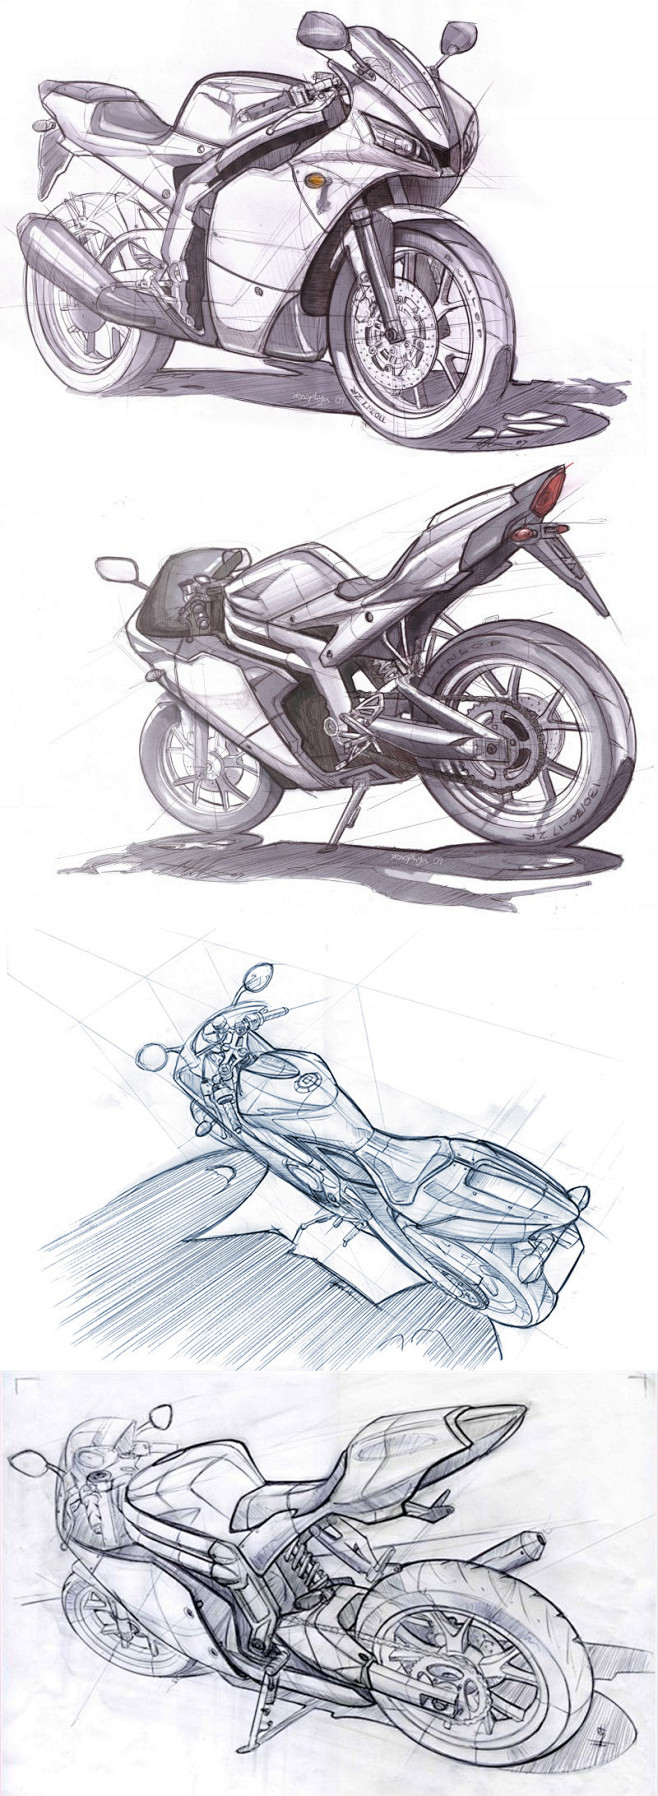 【直击设计全过程】摩托车专题设计 草图篇...